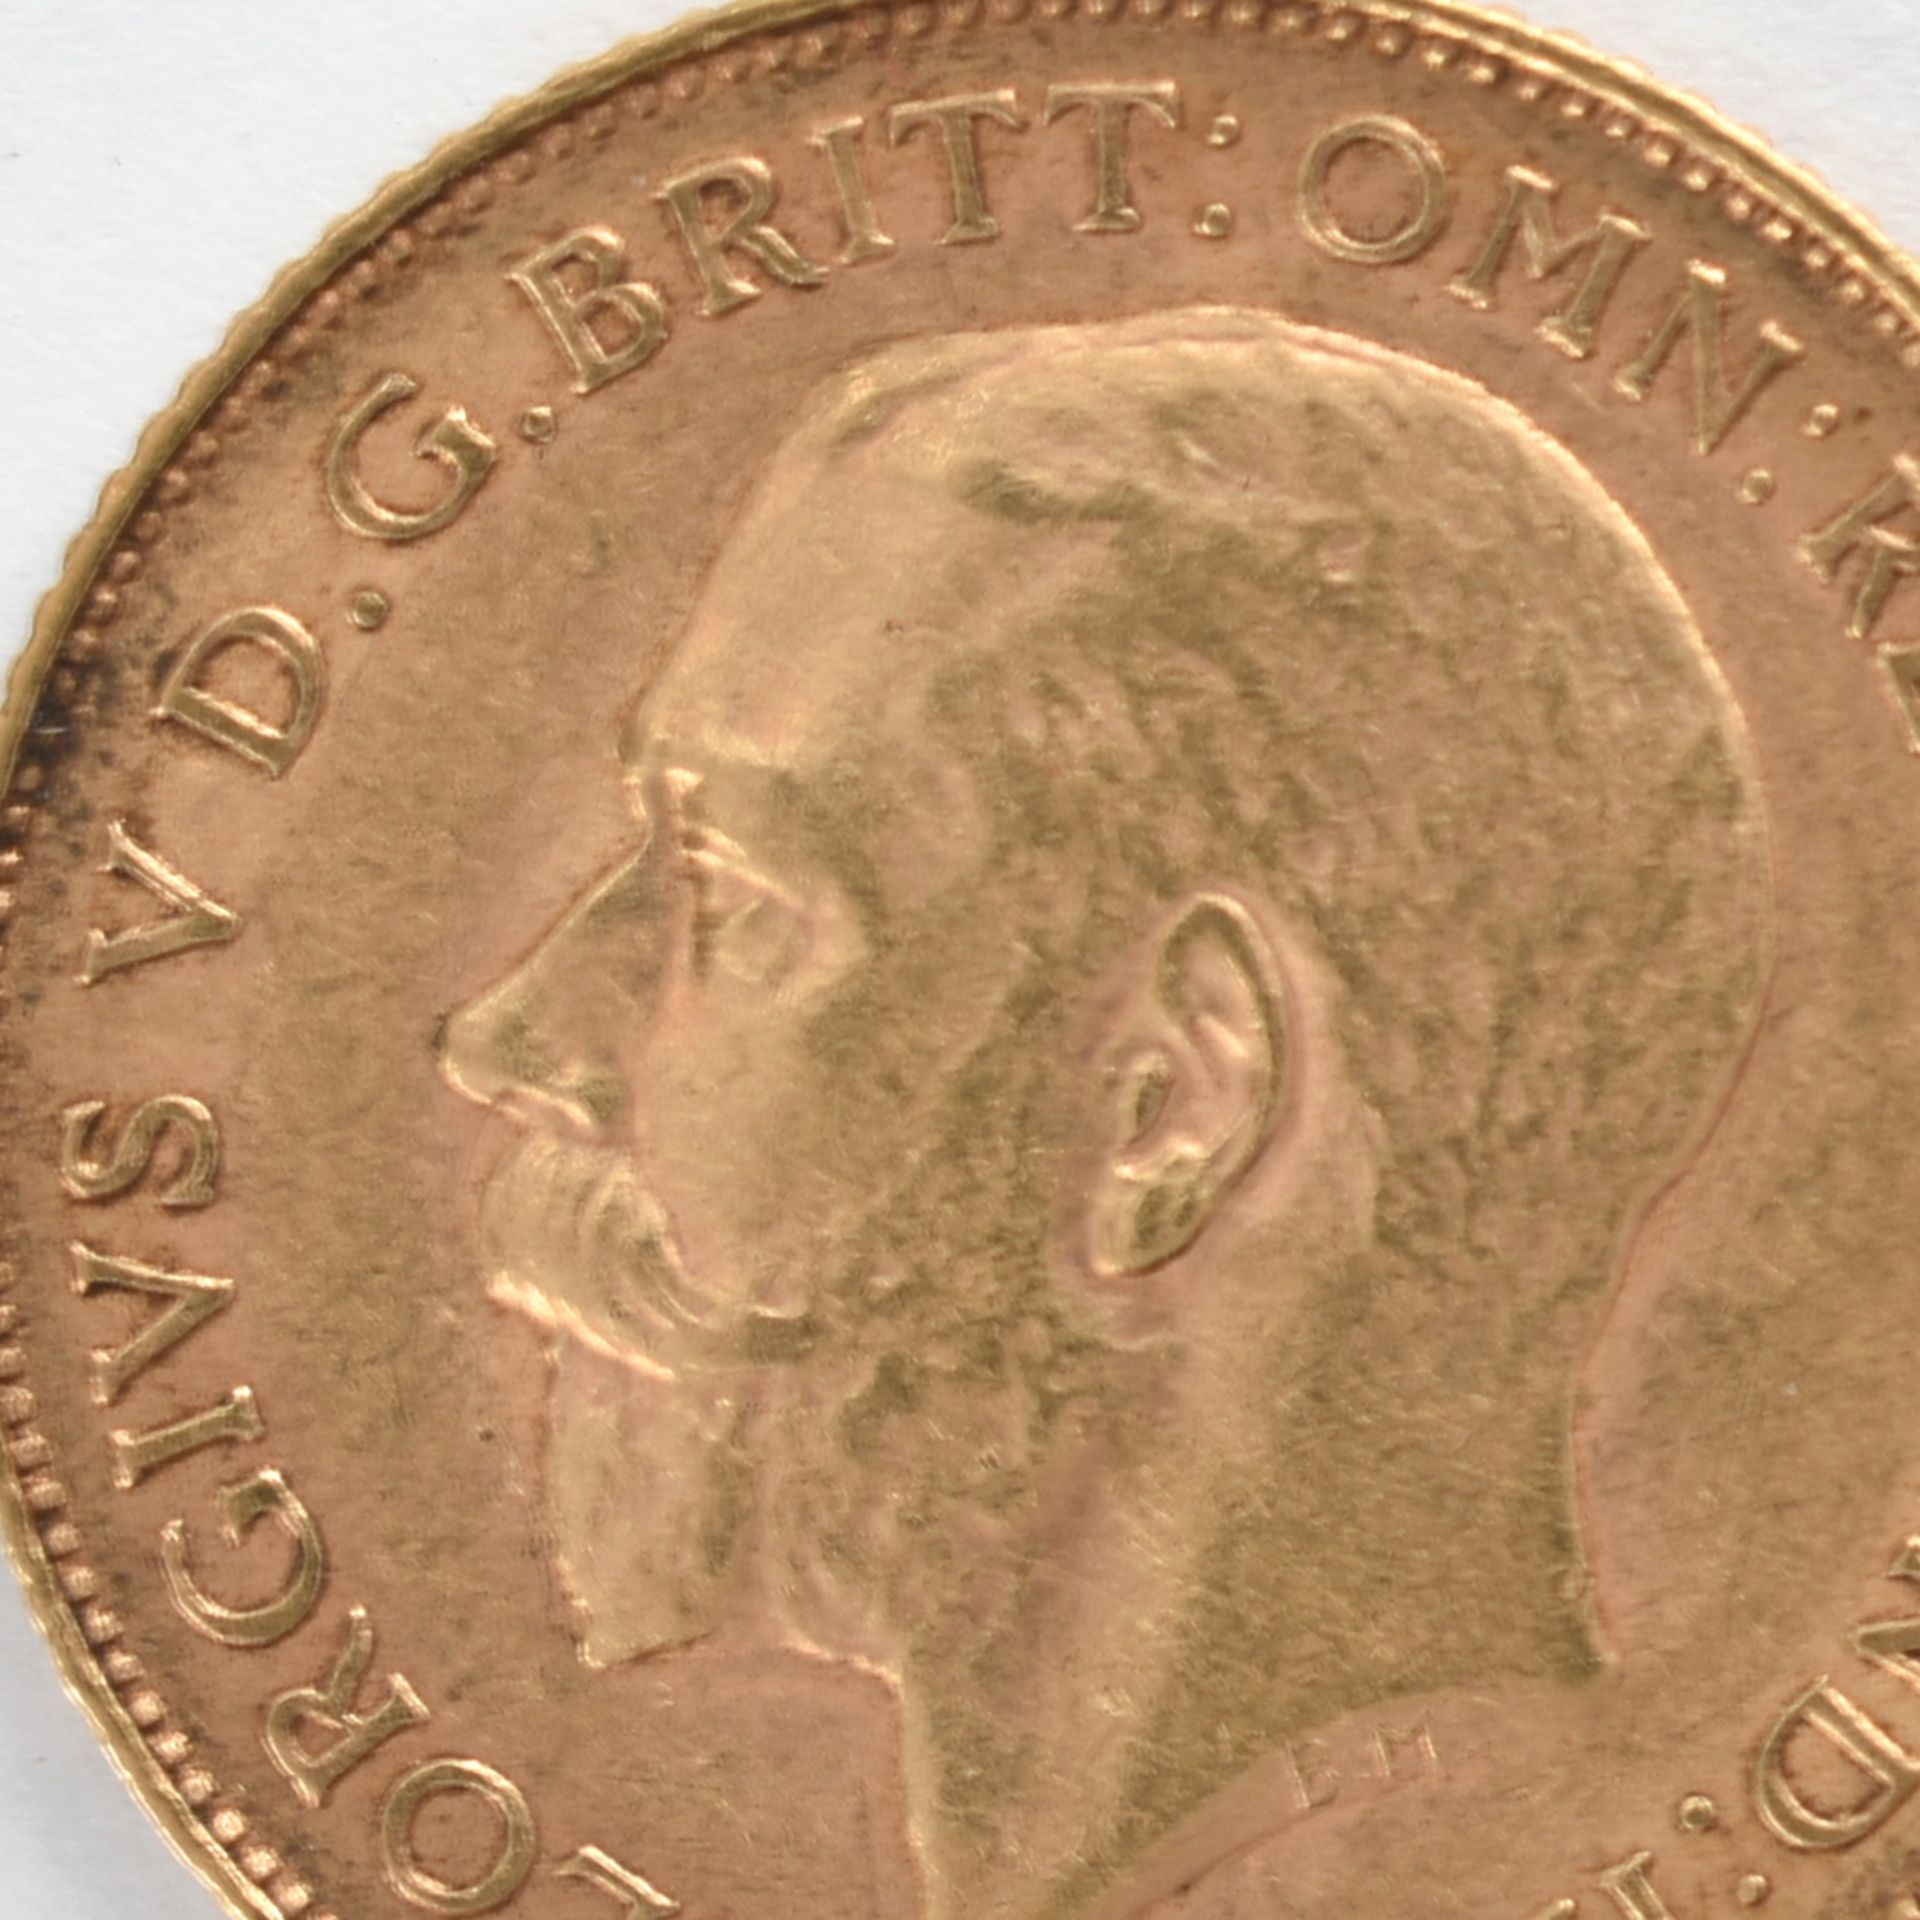 Goldmünze Großbritannien 1925 1/2 Sovereign - 1/2 Pfund in Gold, 3,994 g, 916/1000, D ca. 19,3 mm,